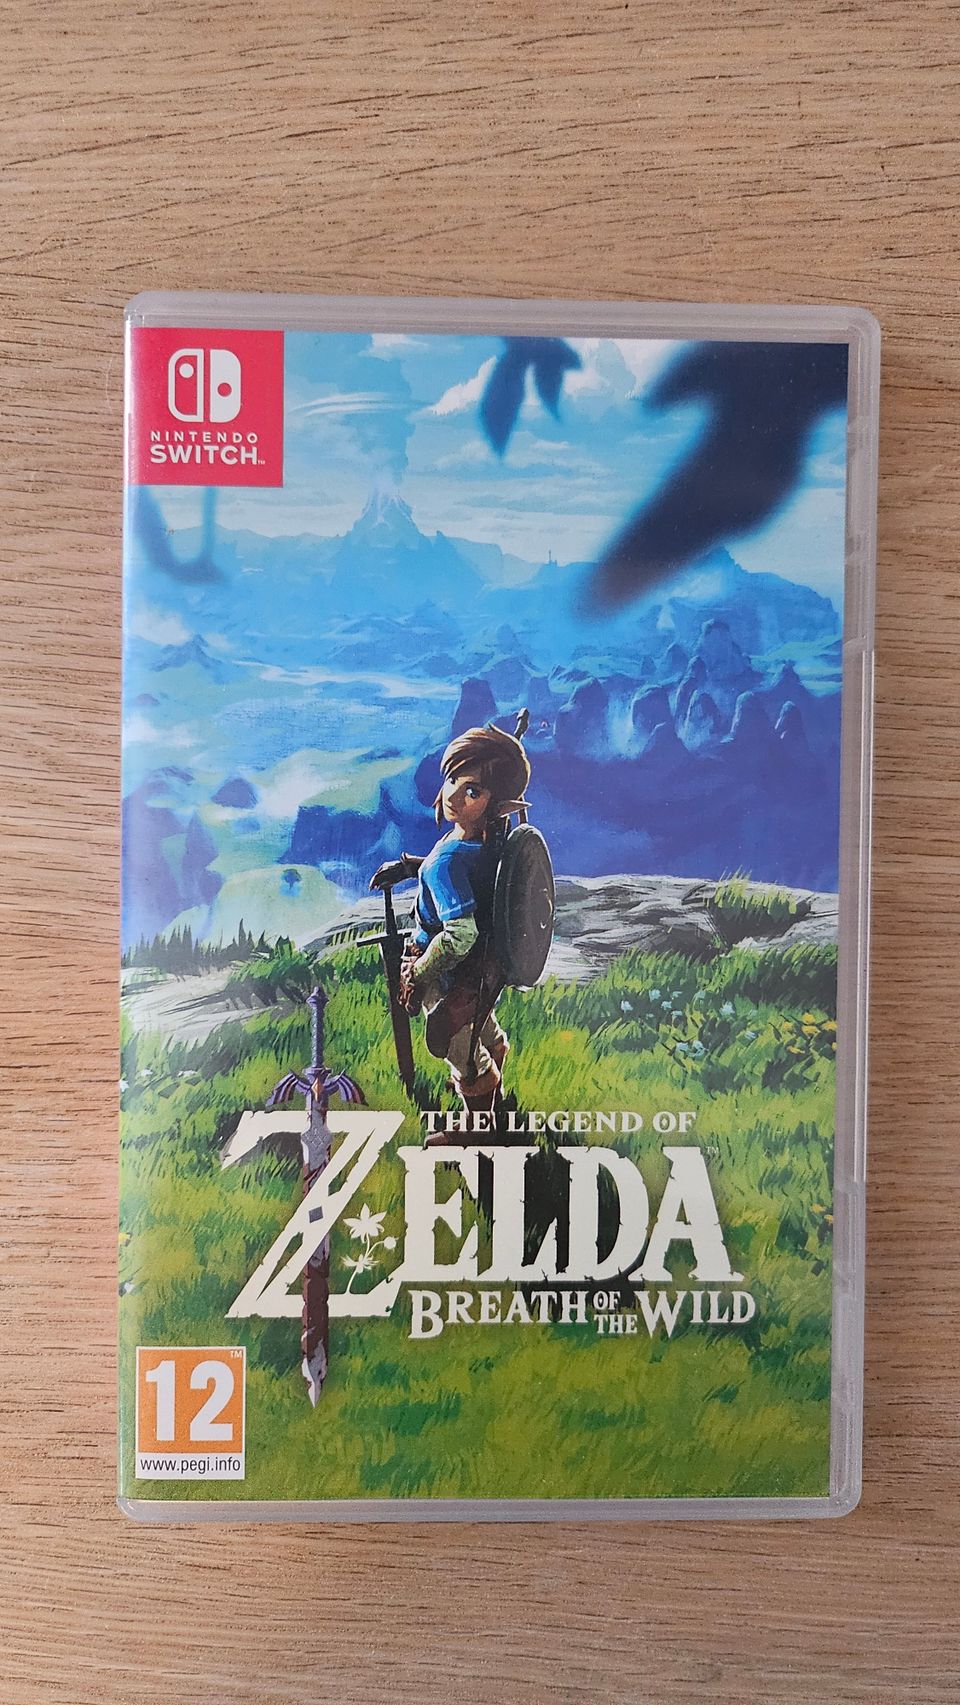 The legend of Zelda: Breath of the wild